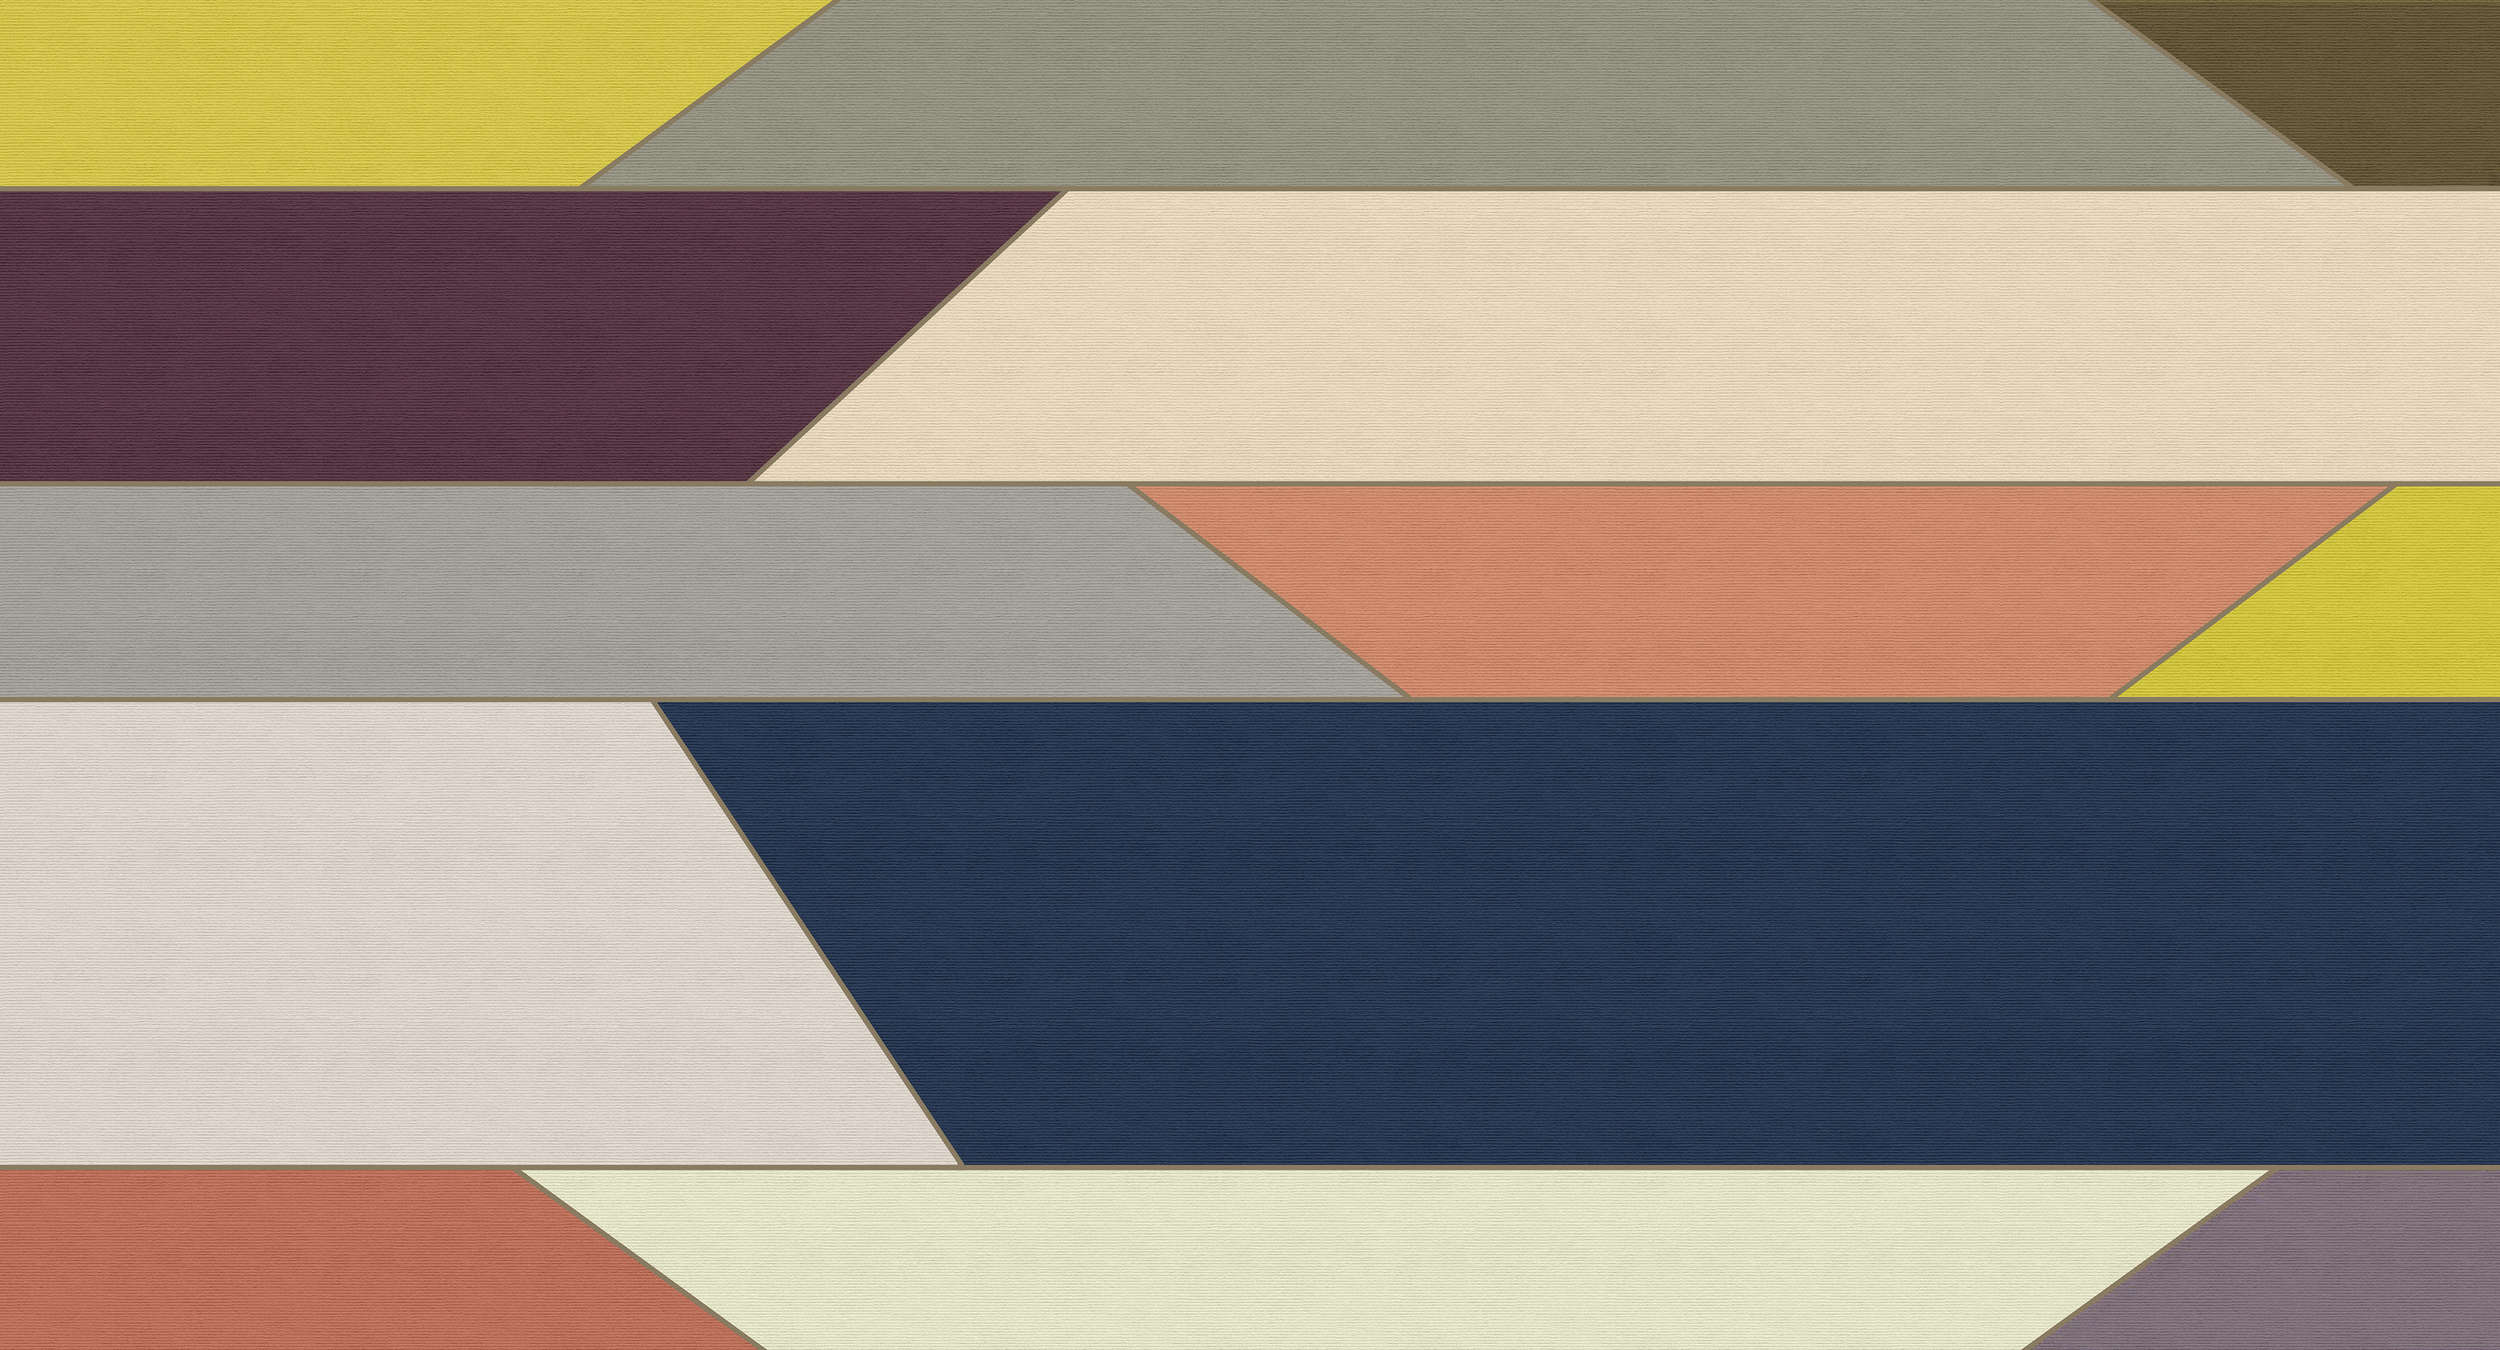             Geometry 1 - Digital behang met kleurrijk horizontaal streeppatroon - ribbelstructuur - beige, blauw | structuurvlies
        